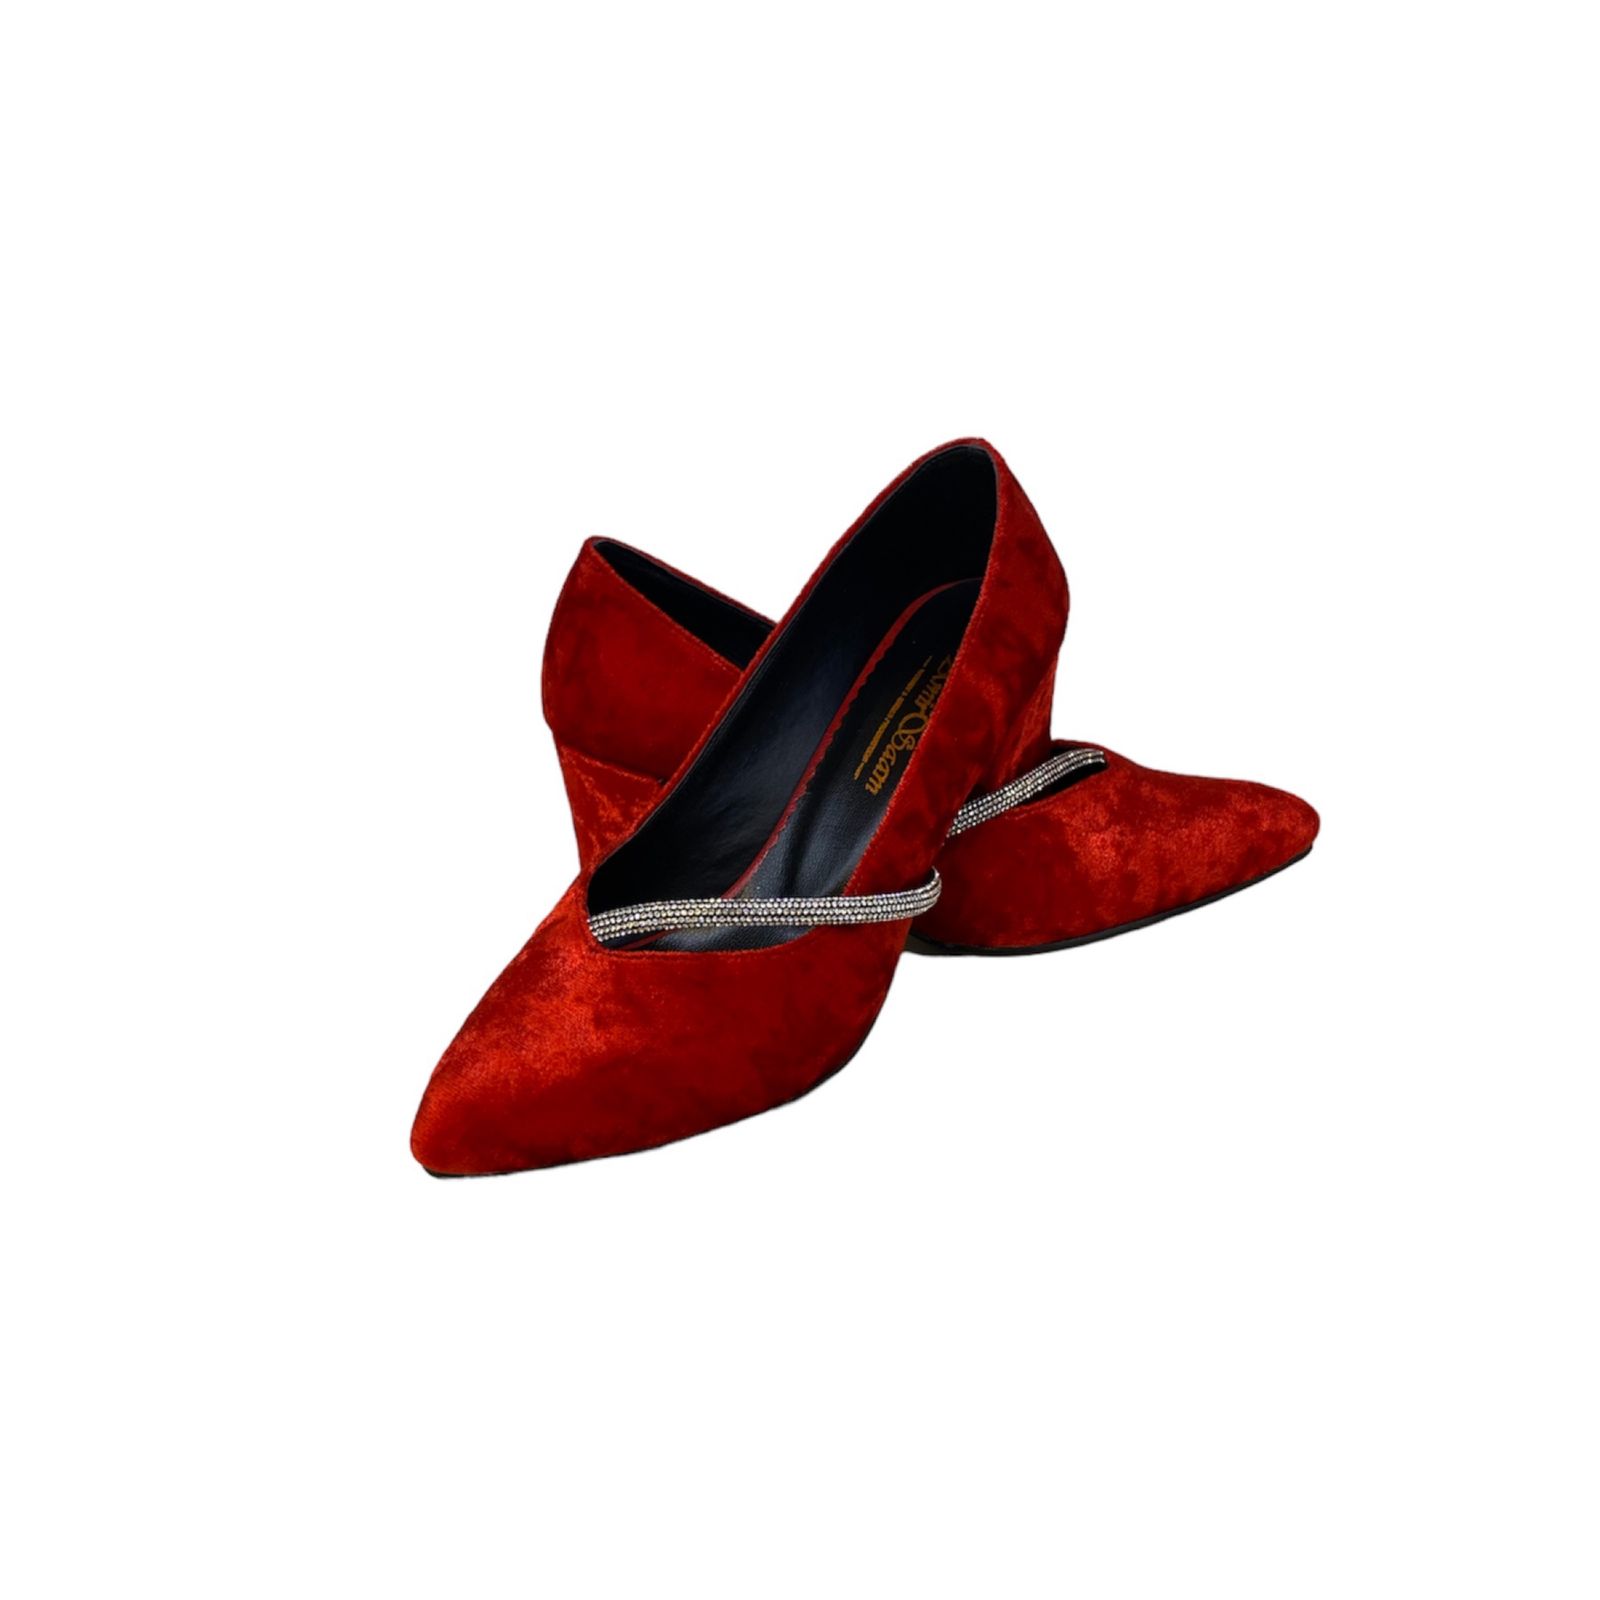 کفش زنانه مدل زیبا مخملی رنگ قرمز -  - 2